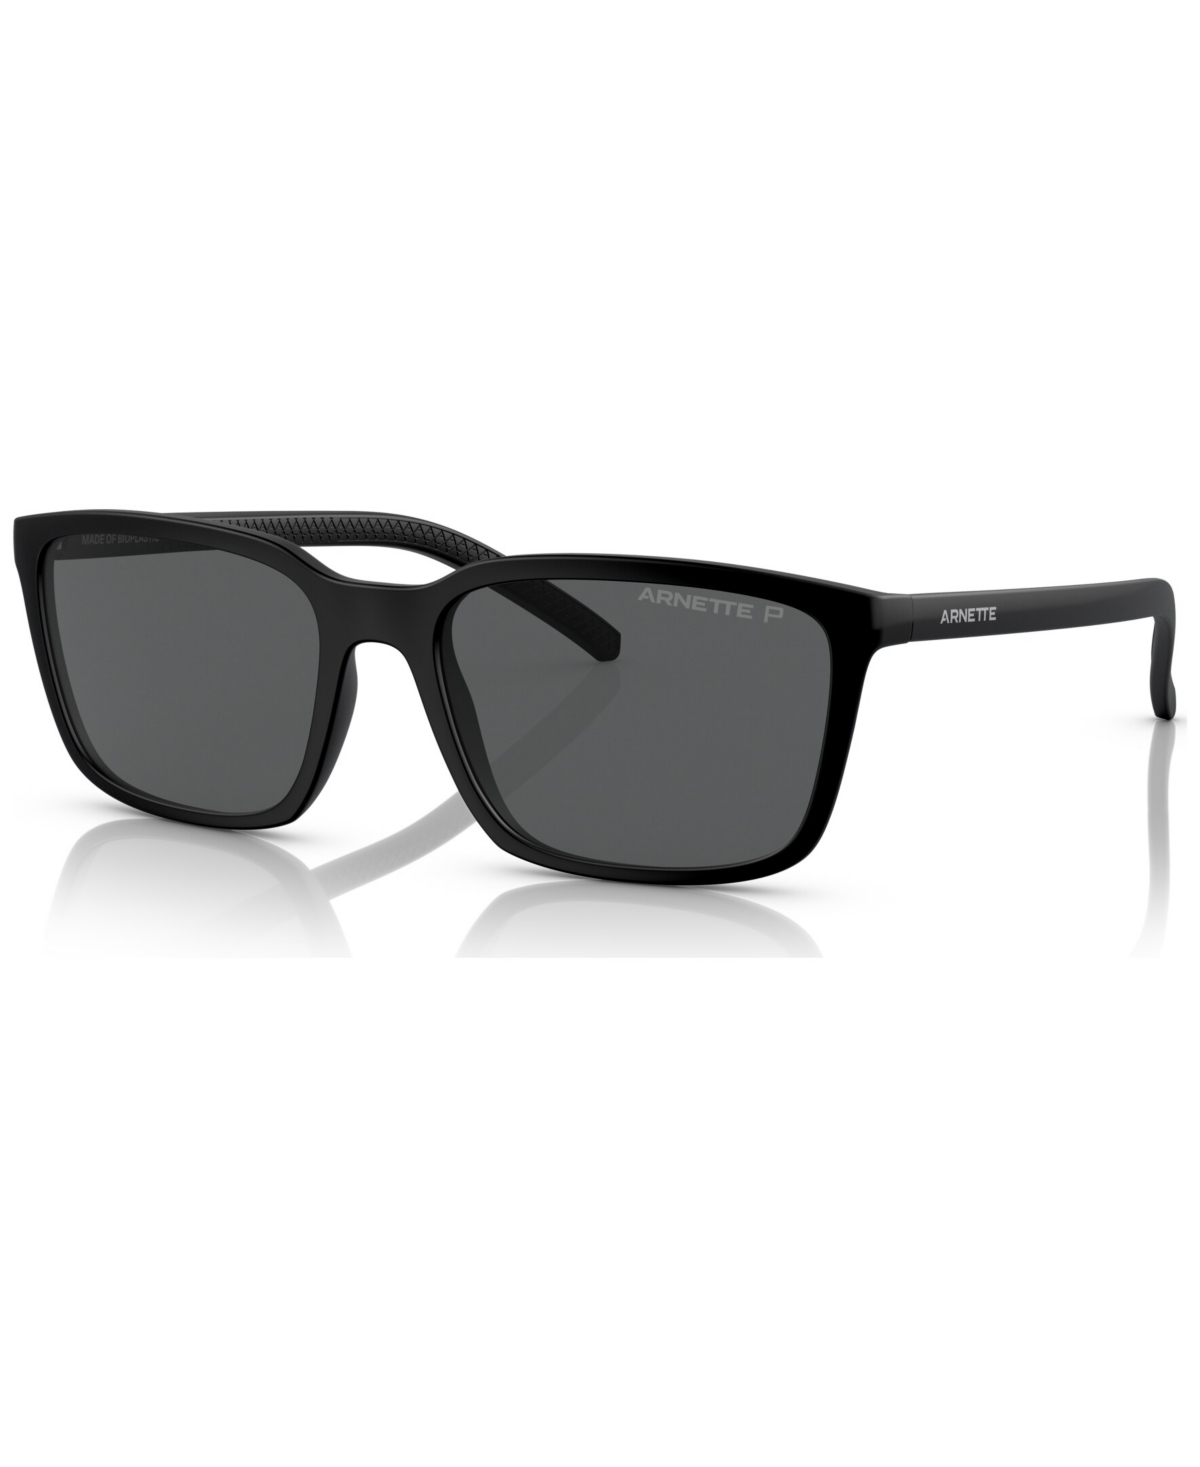 Men's Polarized Sunglasses, AN4311 - Transparent Blue